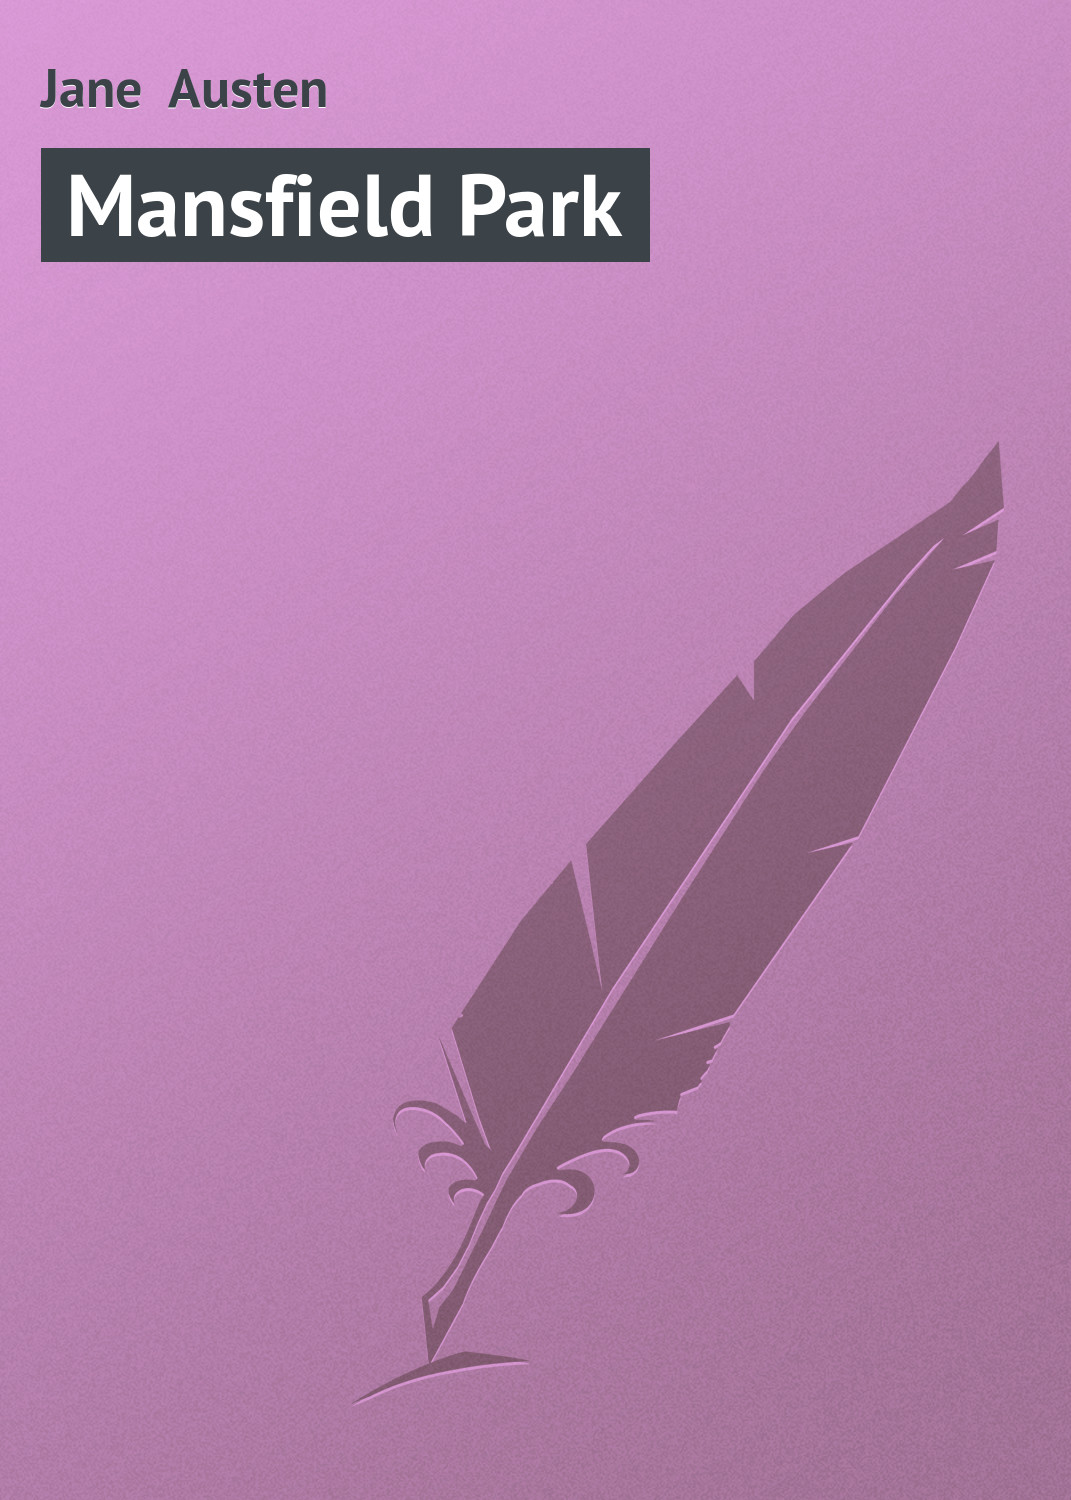 Книга Mansfield Park из серии , созданная Jane Austen, может относится к жанру Зарубежная старинная литература, Зарубежная классика. Стоимость электронной книги Mansfield Park с идентификатором 21103462 составляет 5.99 руб.